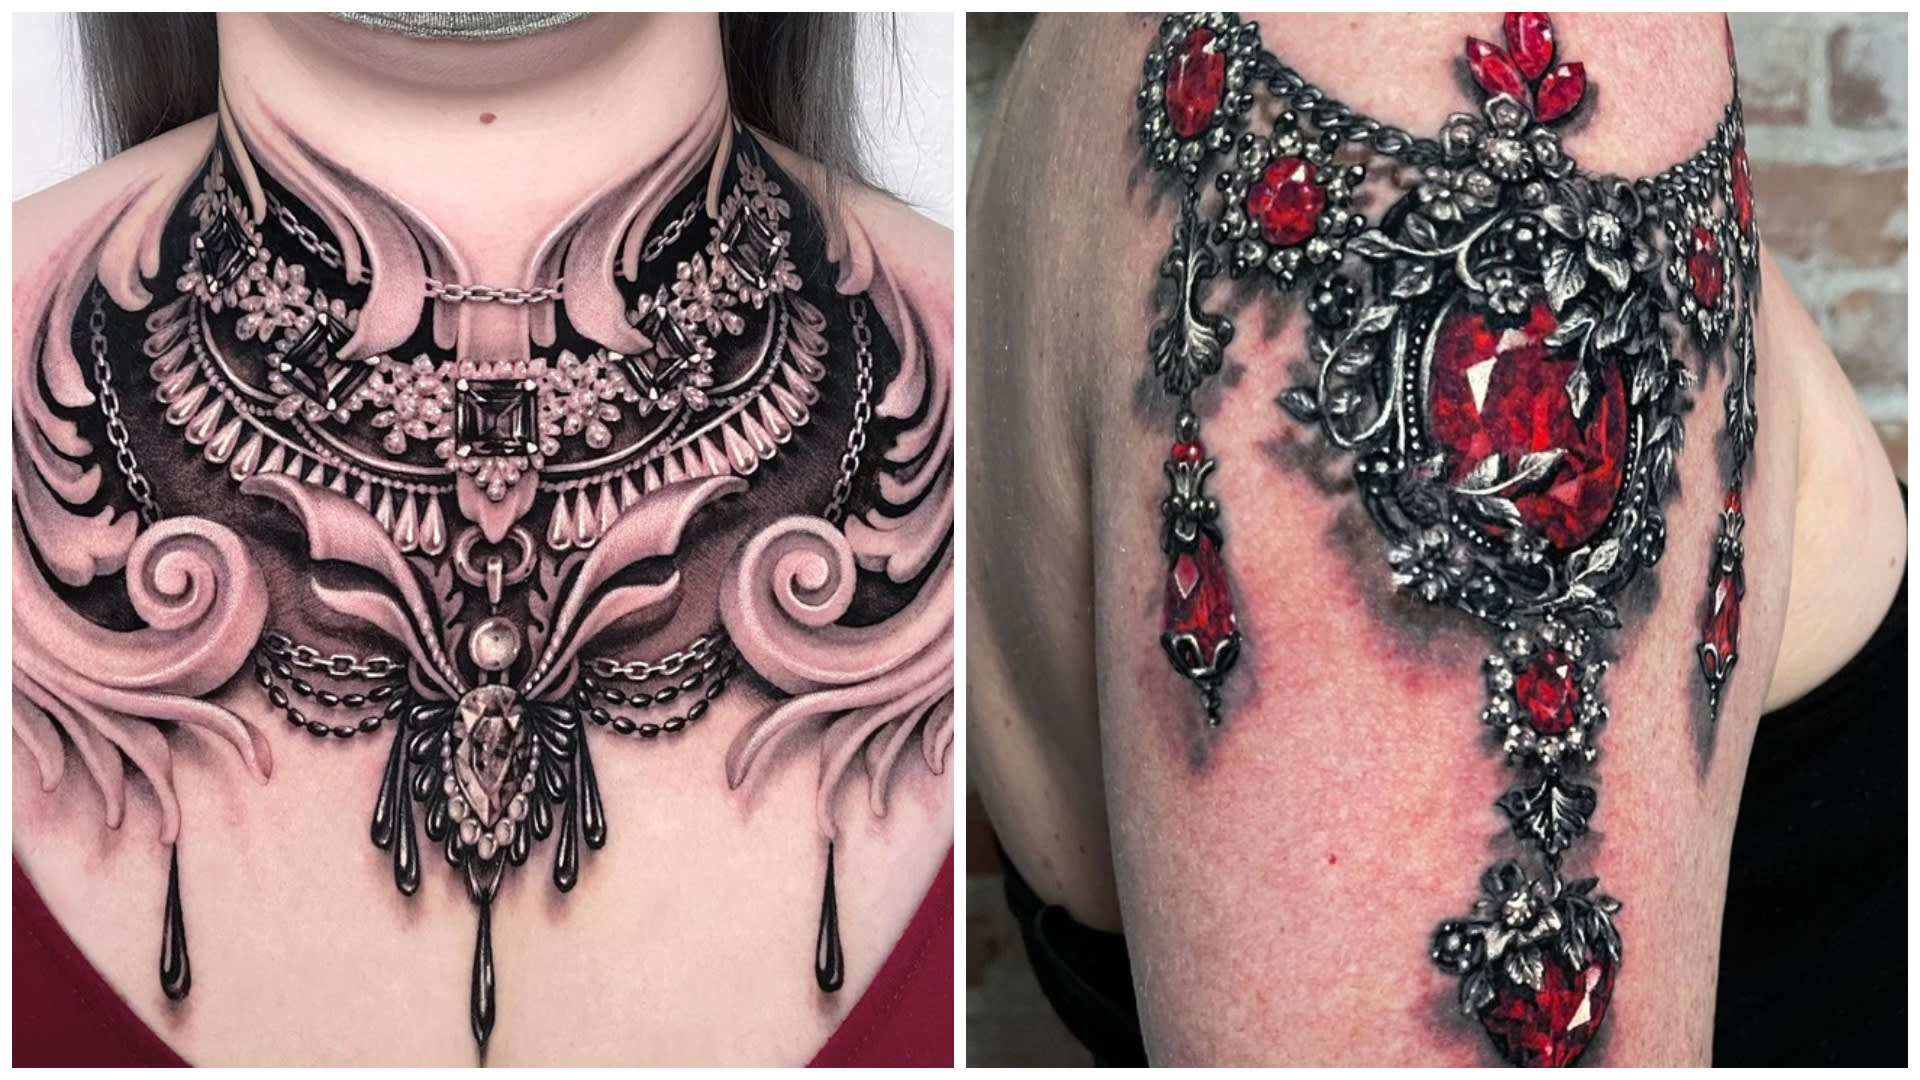 Tetování od Ryan Ashley Malarkey.